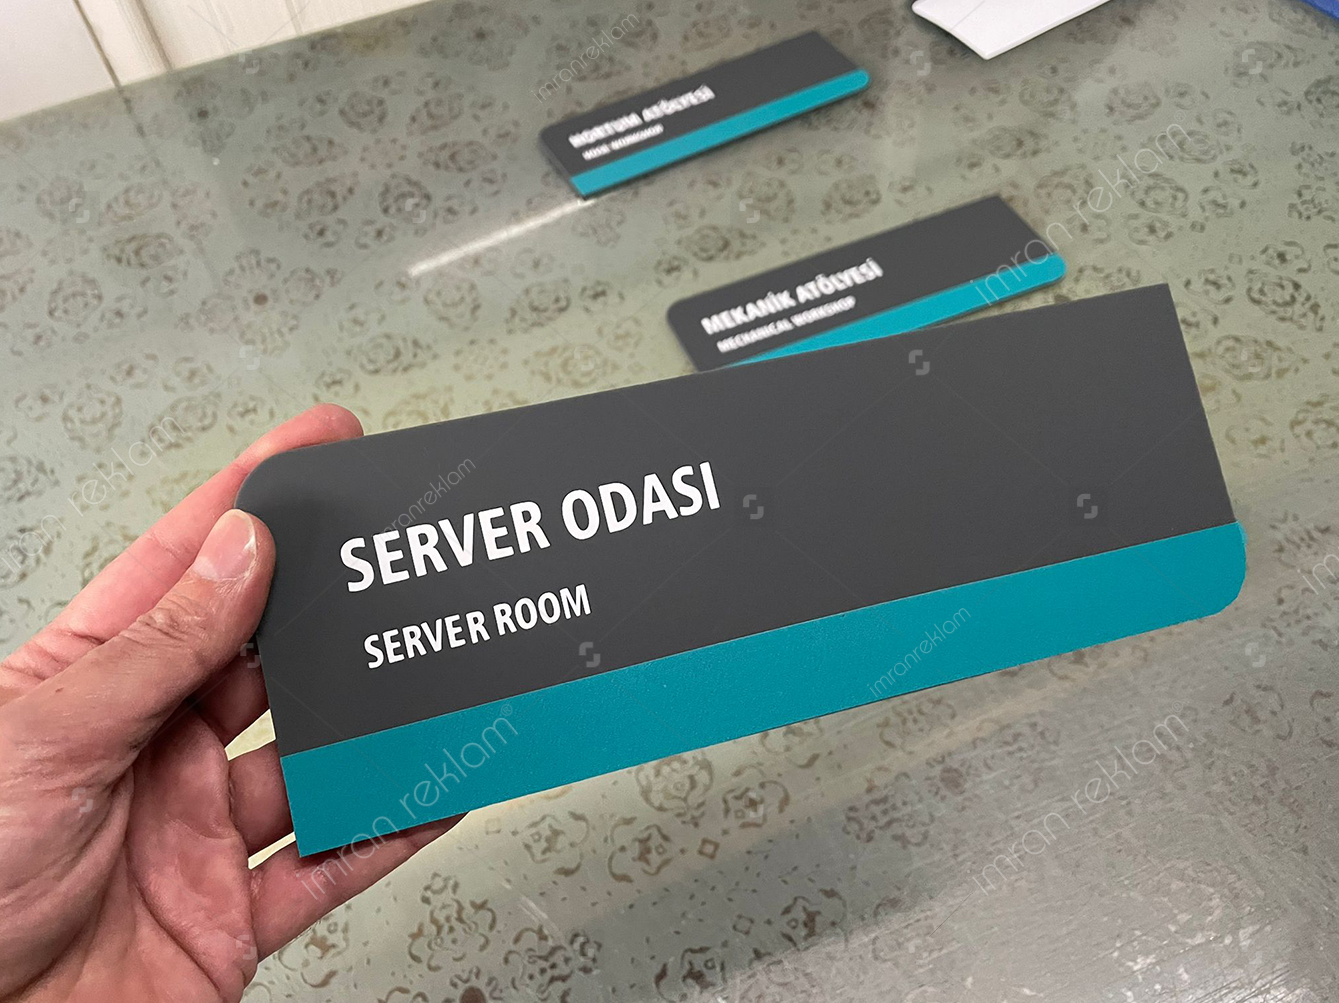 Server Odası (Server Room) Kapı Tabelası